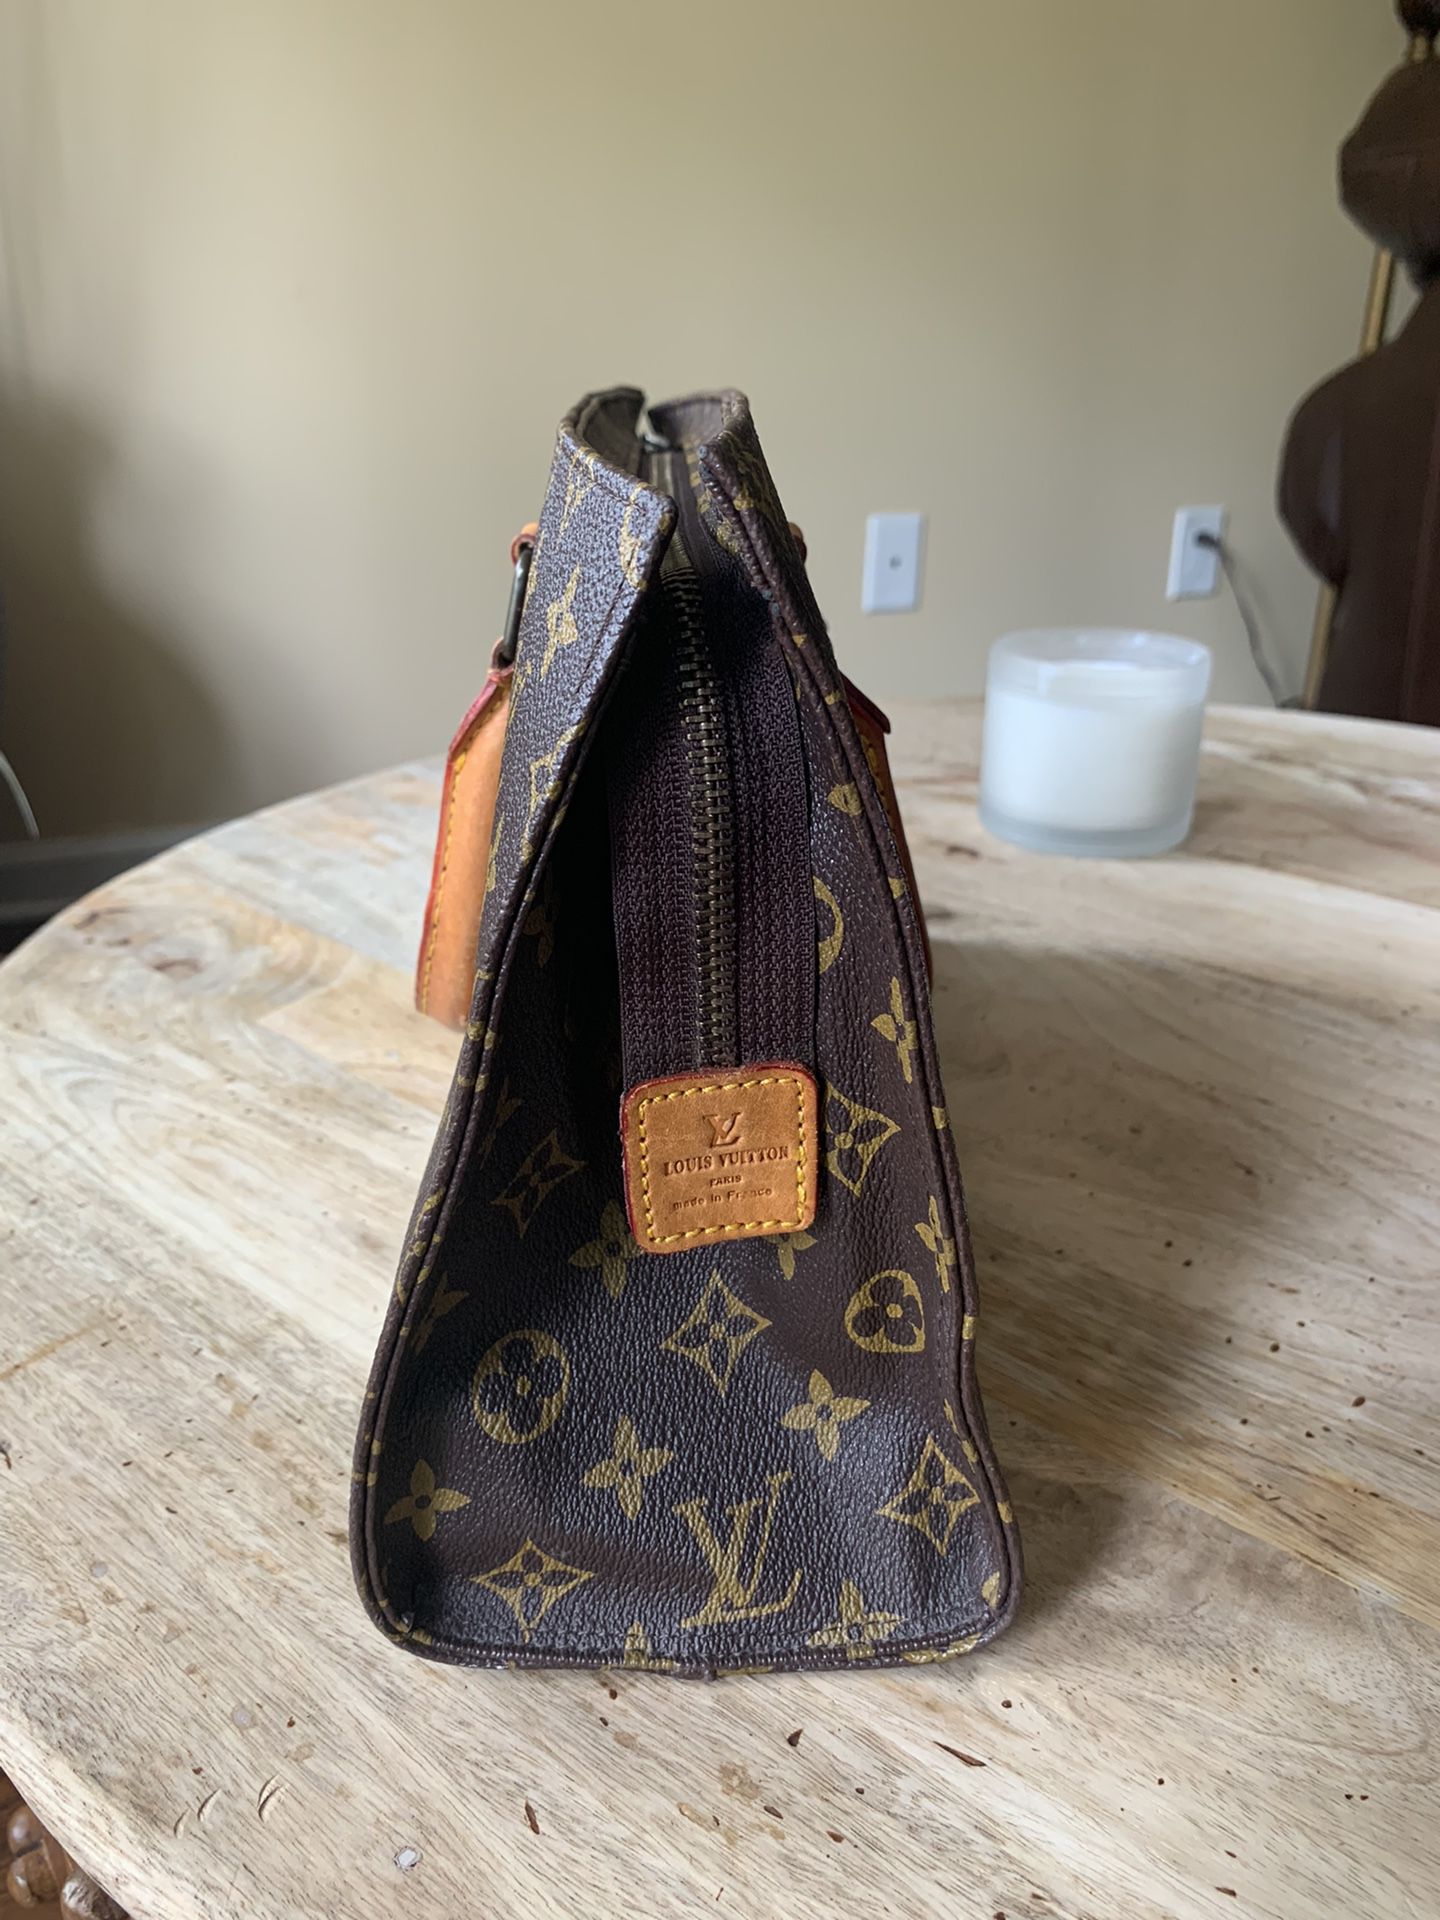 Refurbished LV Bag - $62 (66% Off Retail) - From Jennifer